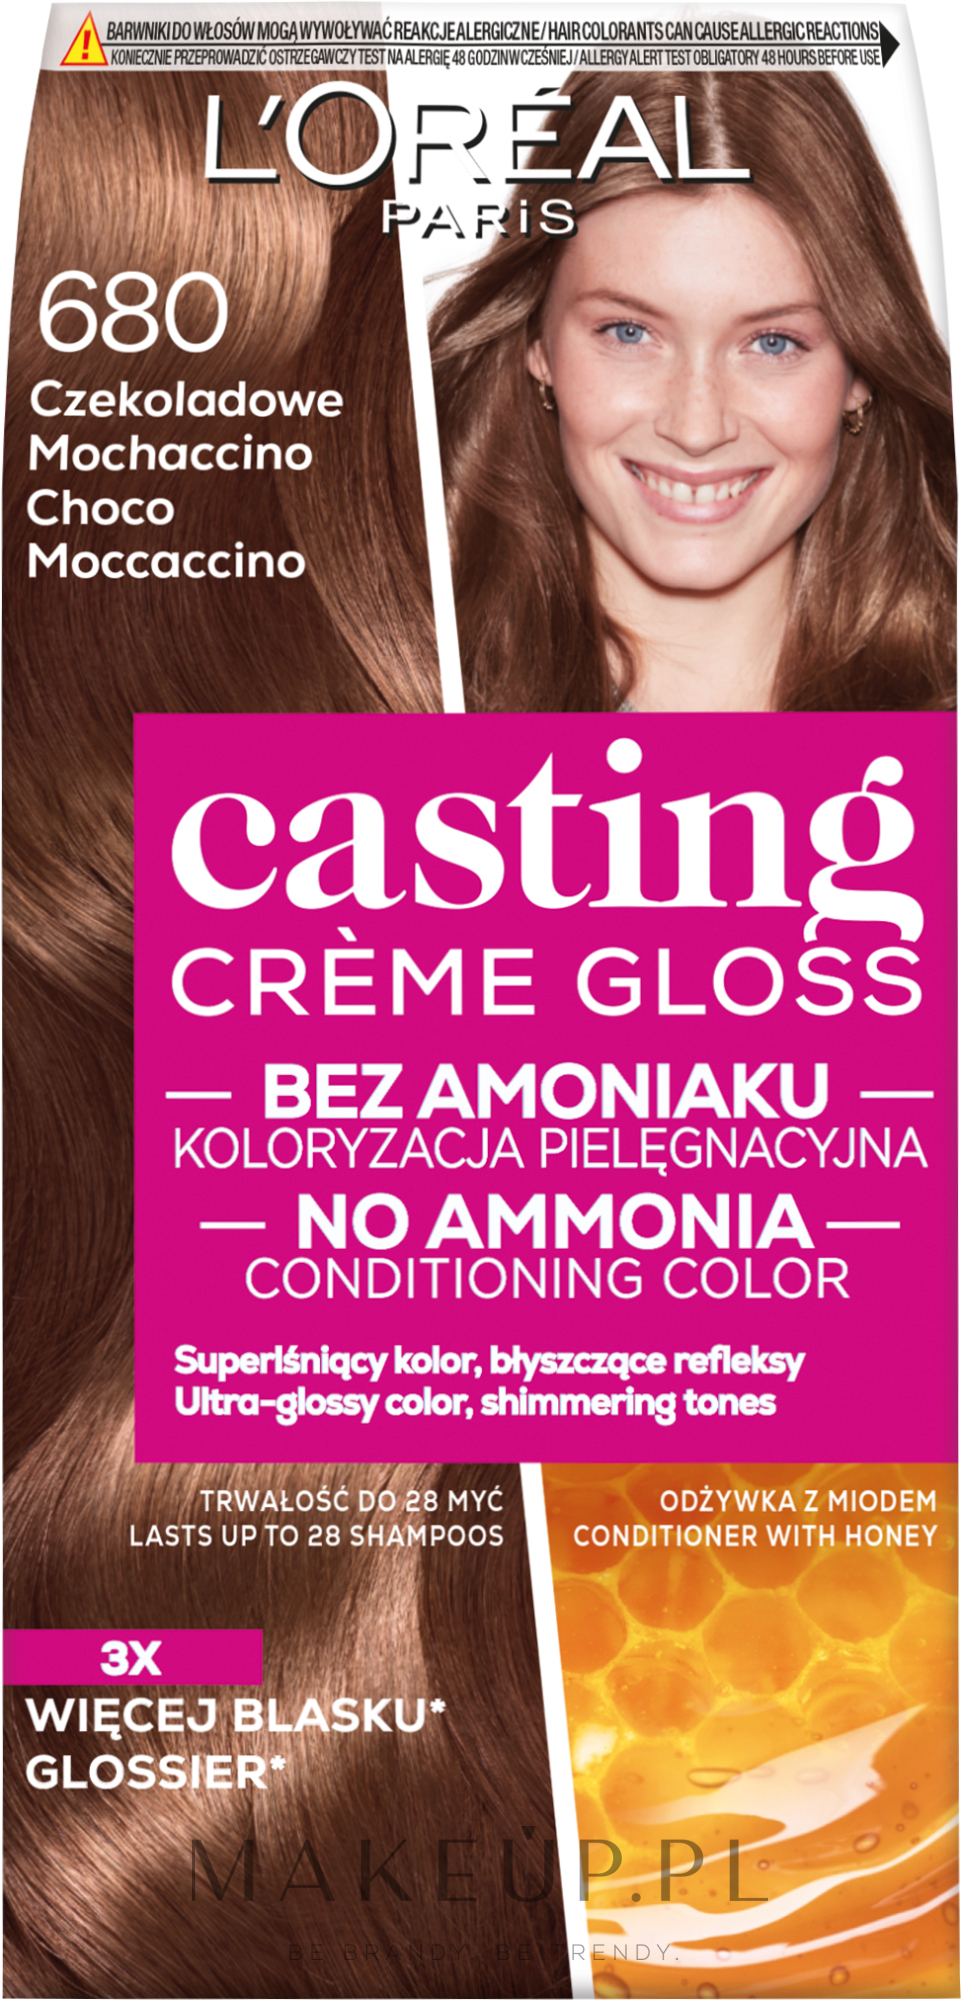 PRZECENA! L'Oréal Paris Casting Crème Gloss - Farba do włosów bez amoniaku * — Zdjęcie 680 - Choco Moccacino